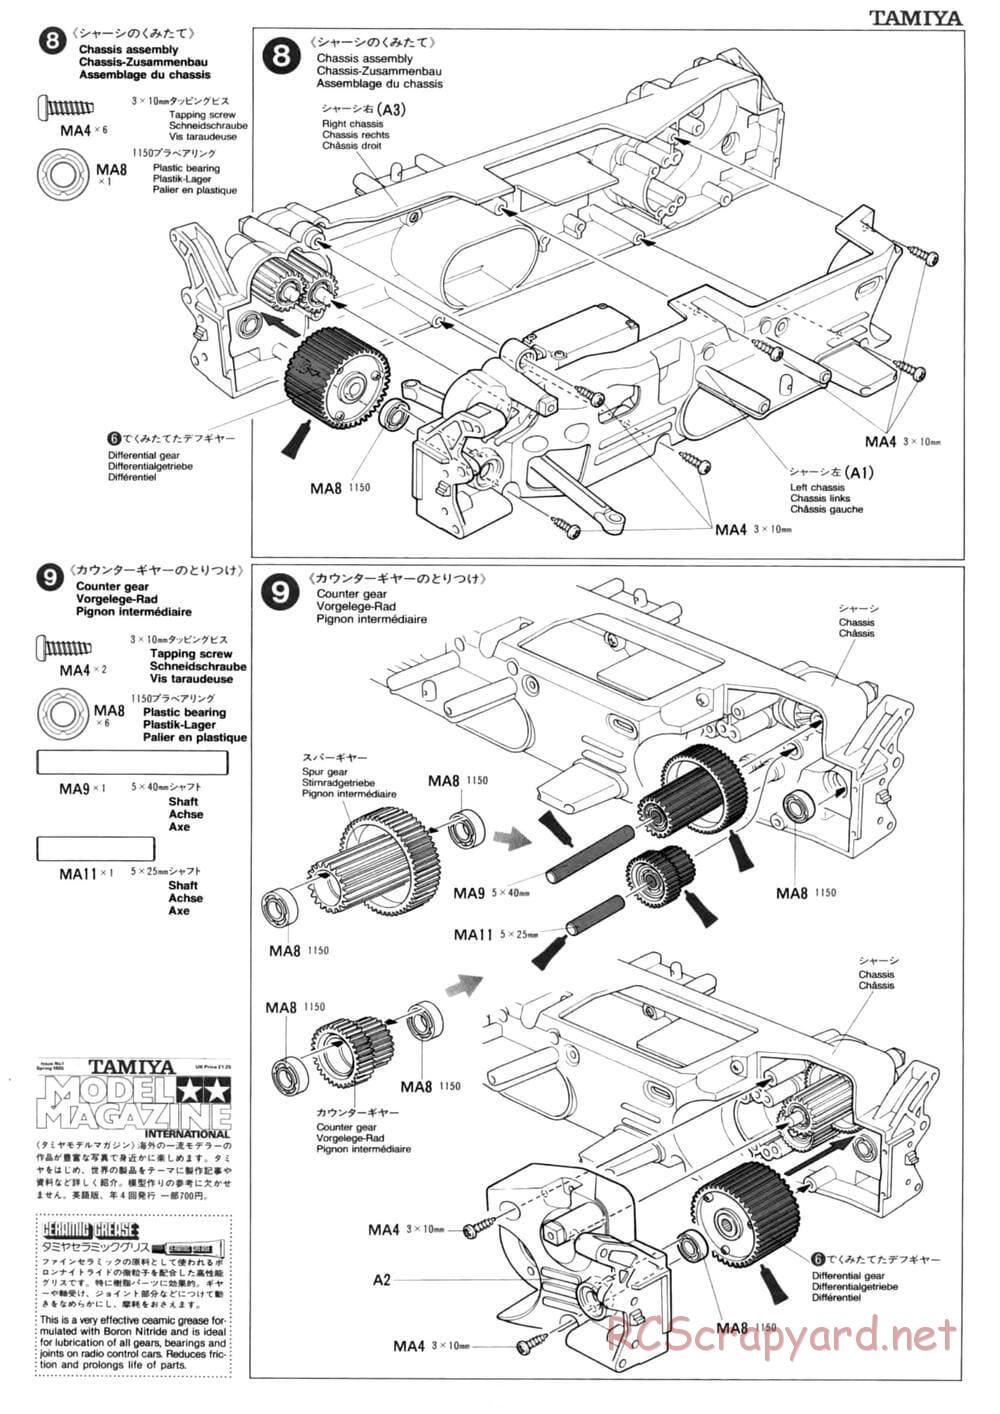 Tamiya - TL-01 Chassis - Manual - Page 7